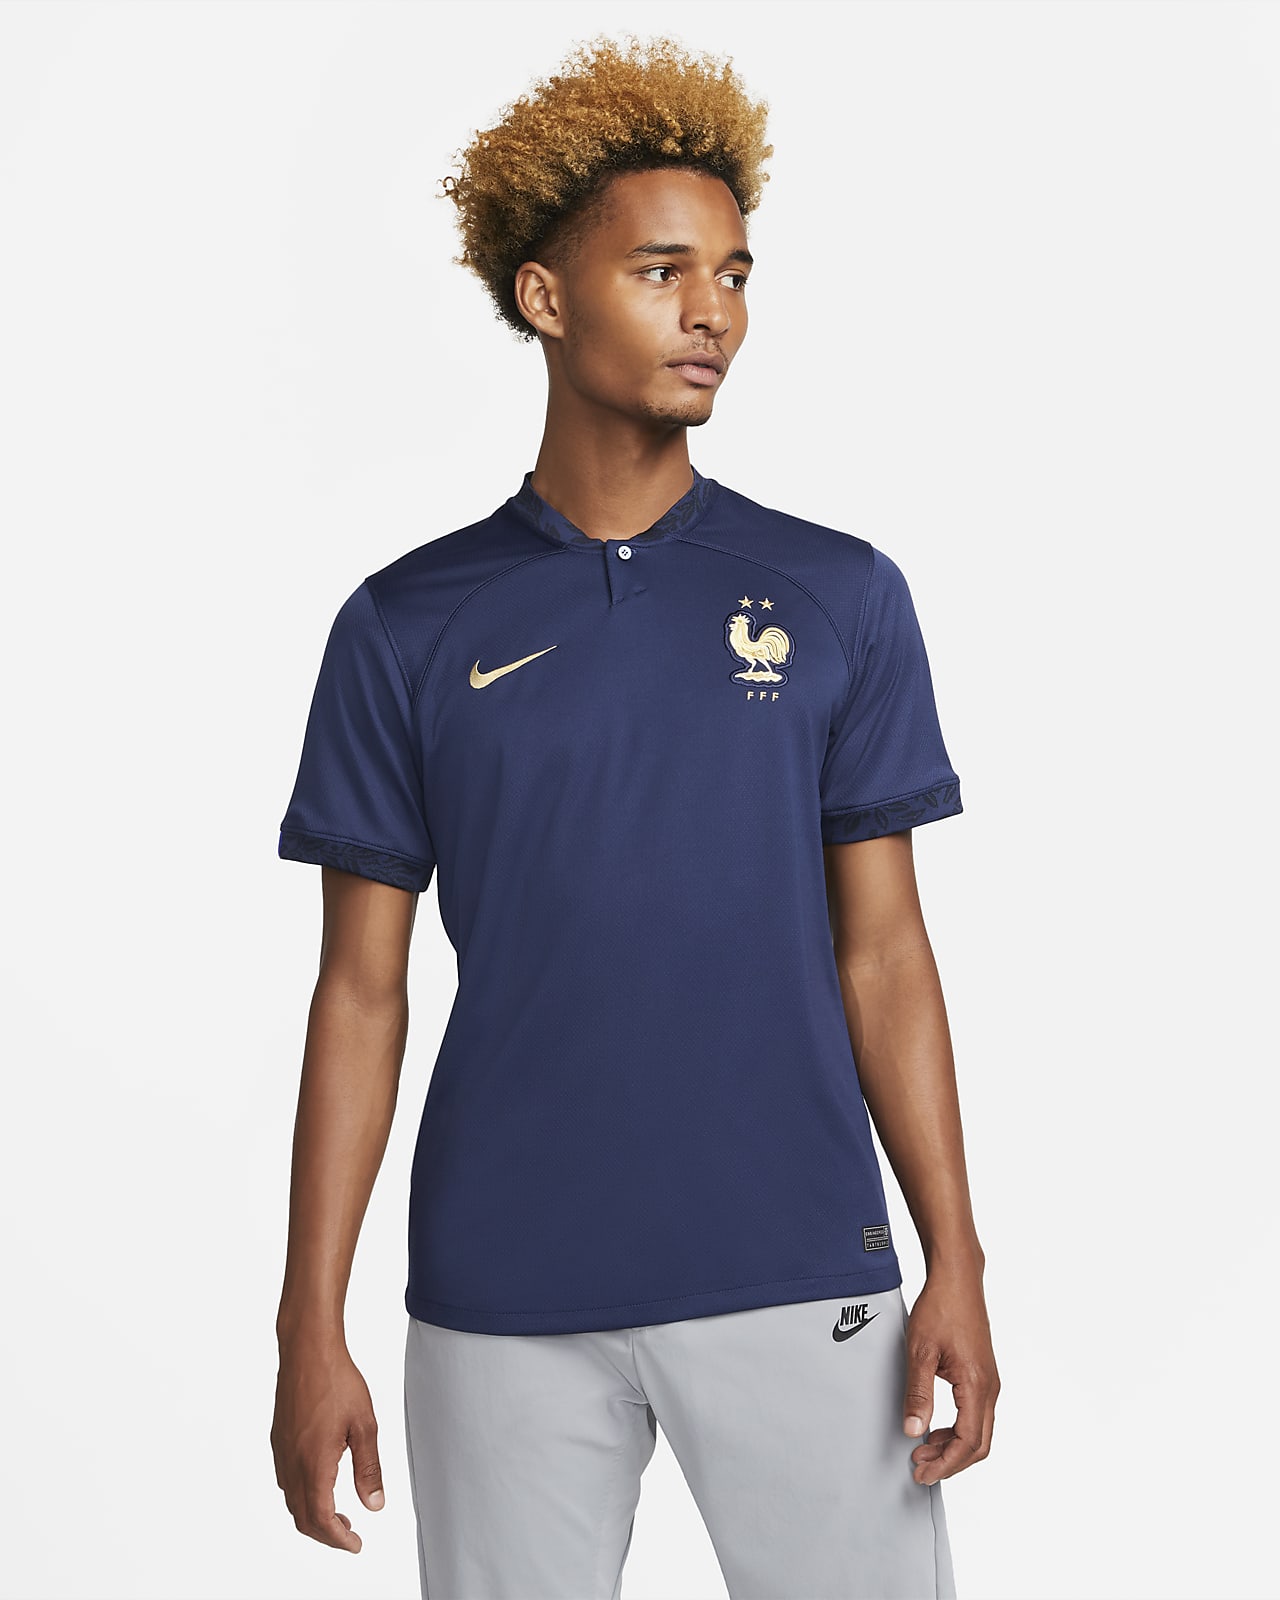 2022/23 赛季法国队主场球迷版 Nike Dri-FIT 男子足球球衣